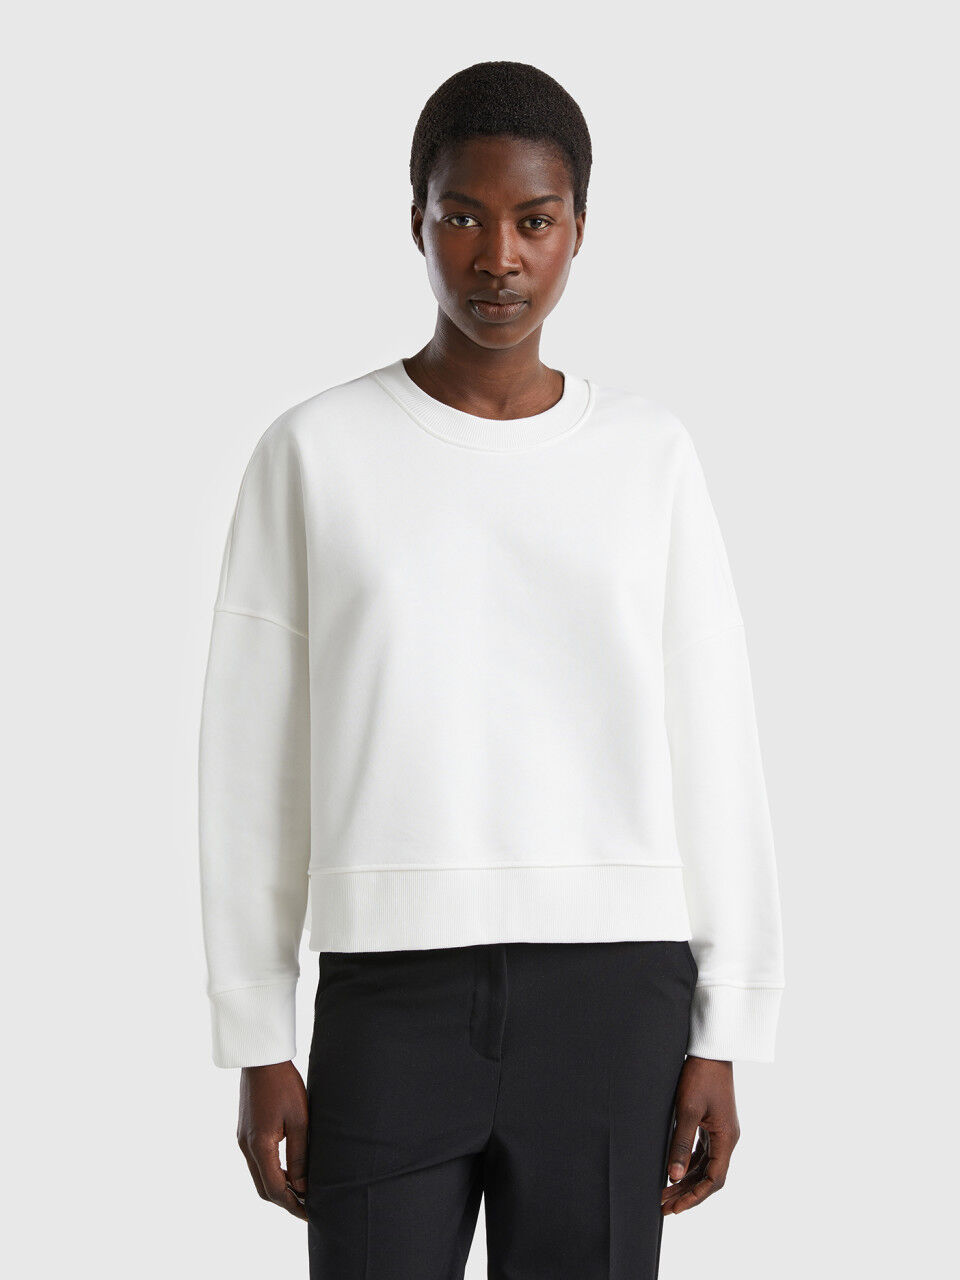 Boxy fit 100% cotton sweatshirt